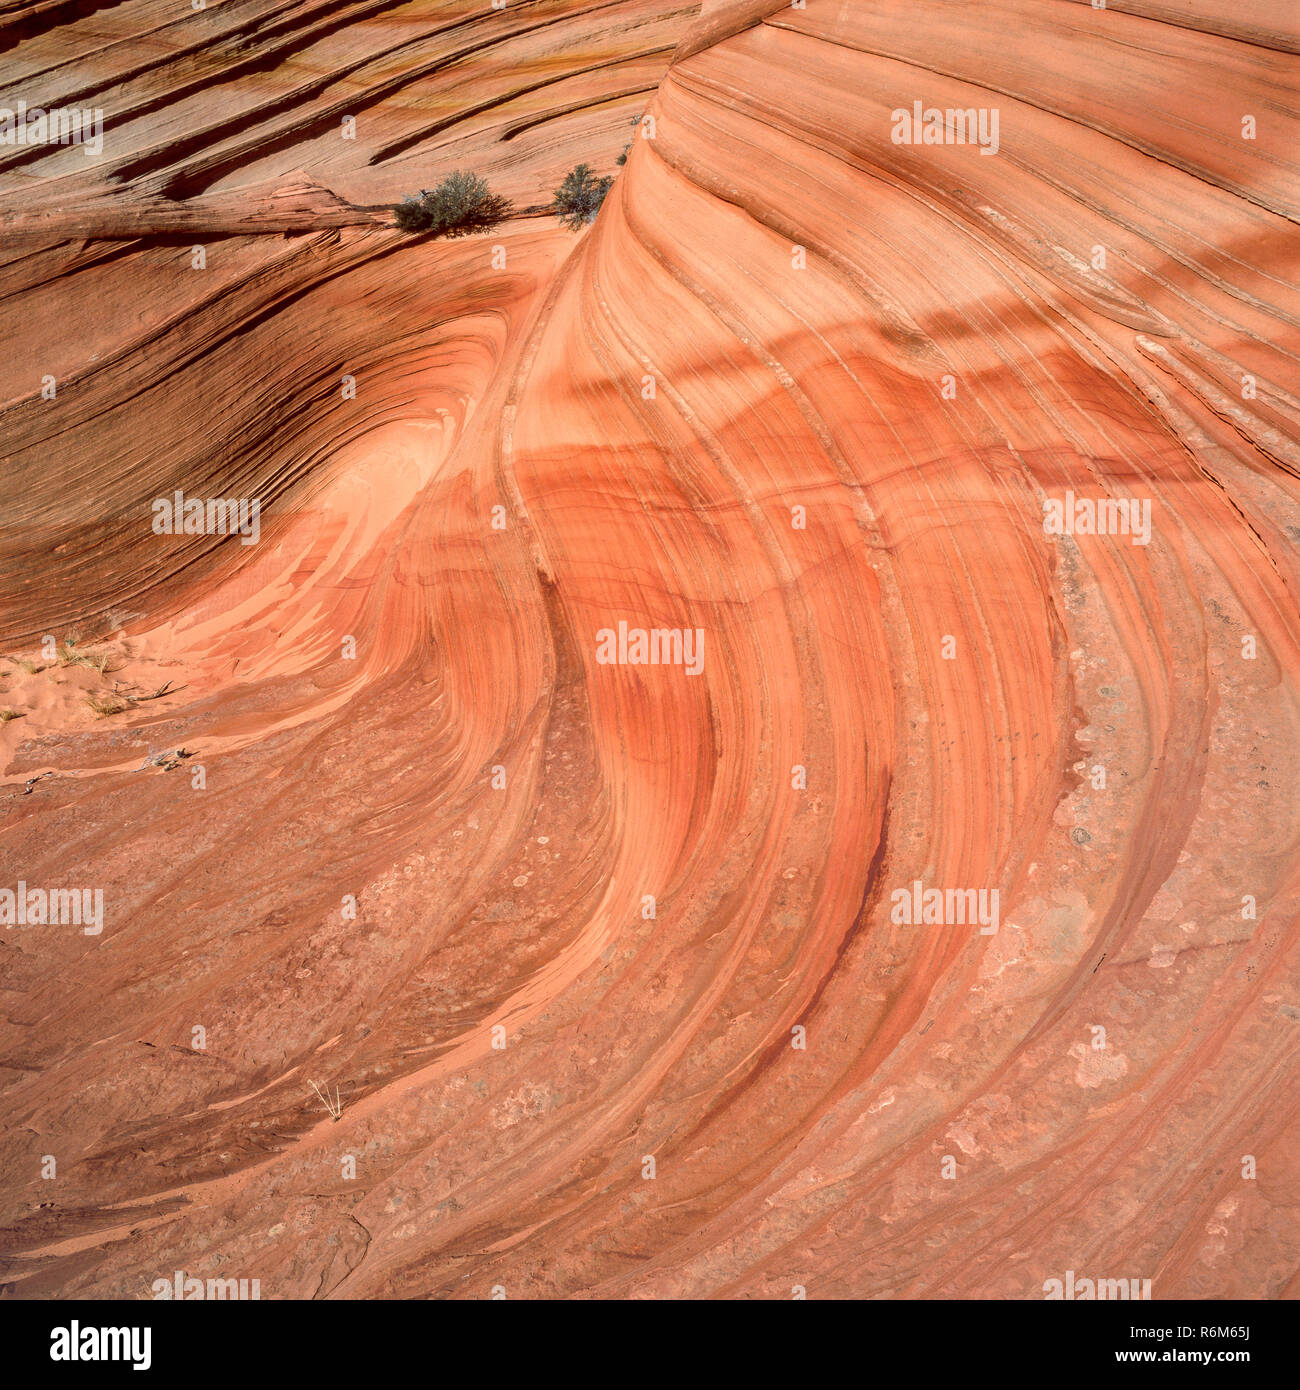 Cross-Bedded arenaria Navajo, Coyote Buttes, Vermiglio scogliere monumento nazionale, Colorado Plateau, Arizona Foto Stock